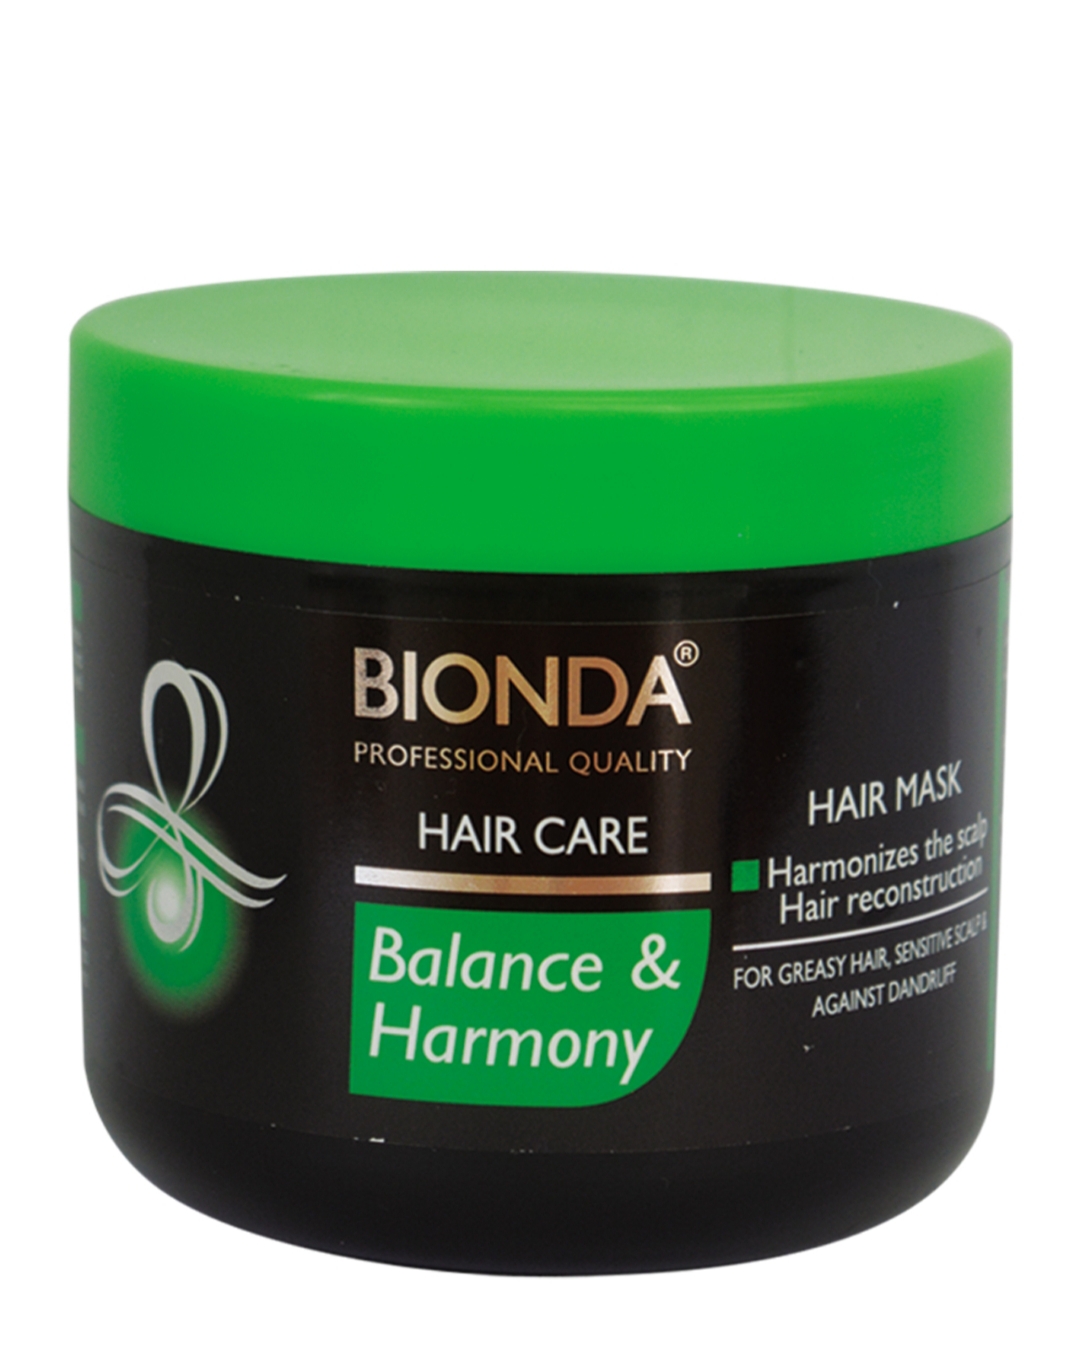 فراورده های حالت دهنده ،نرم کننده وتثبیت کننده آرایش مو (کرمها ، لوسیونها وروغنها) BIONDA HAIR MASK HAIR CARE BALANCE & HARMONY